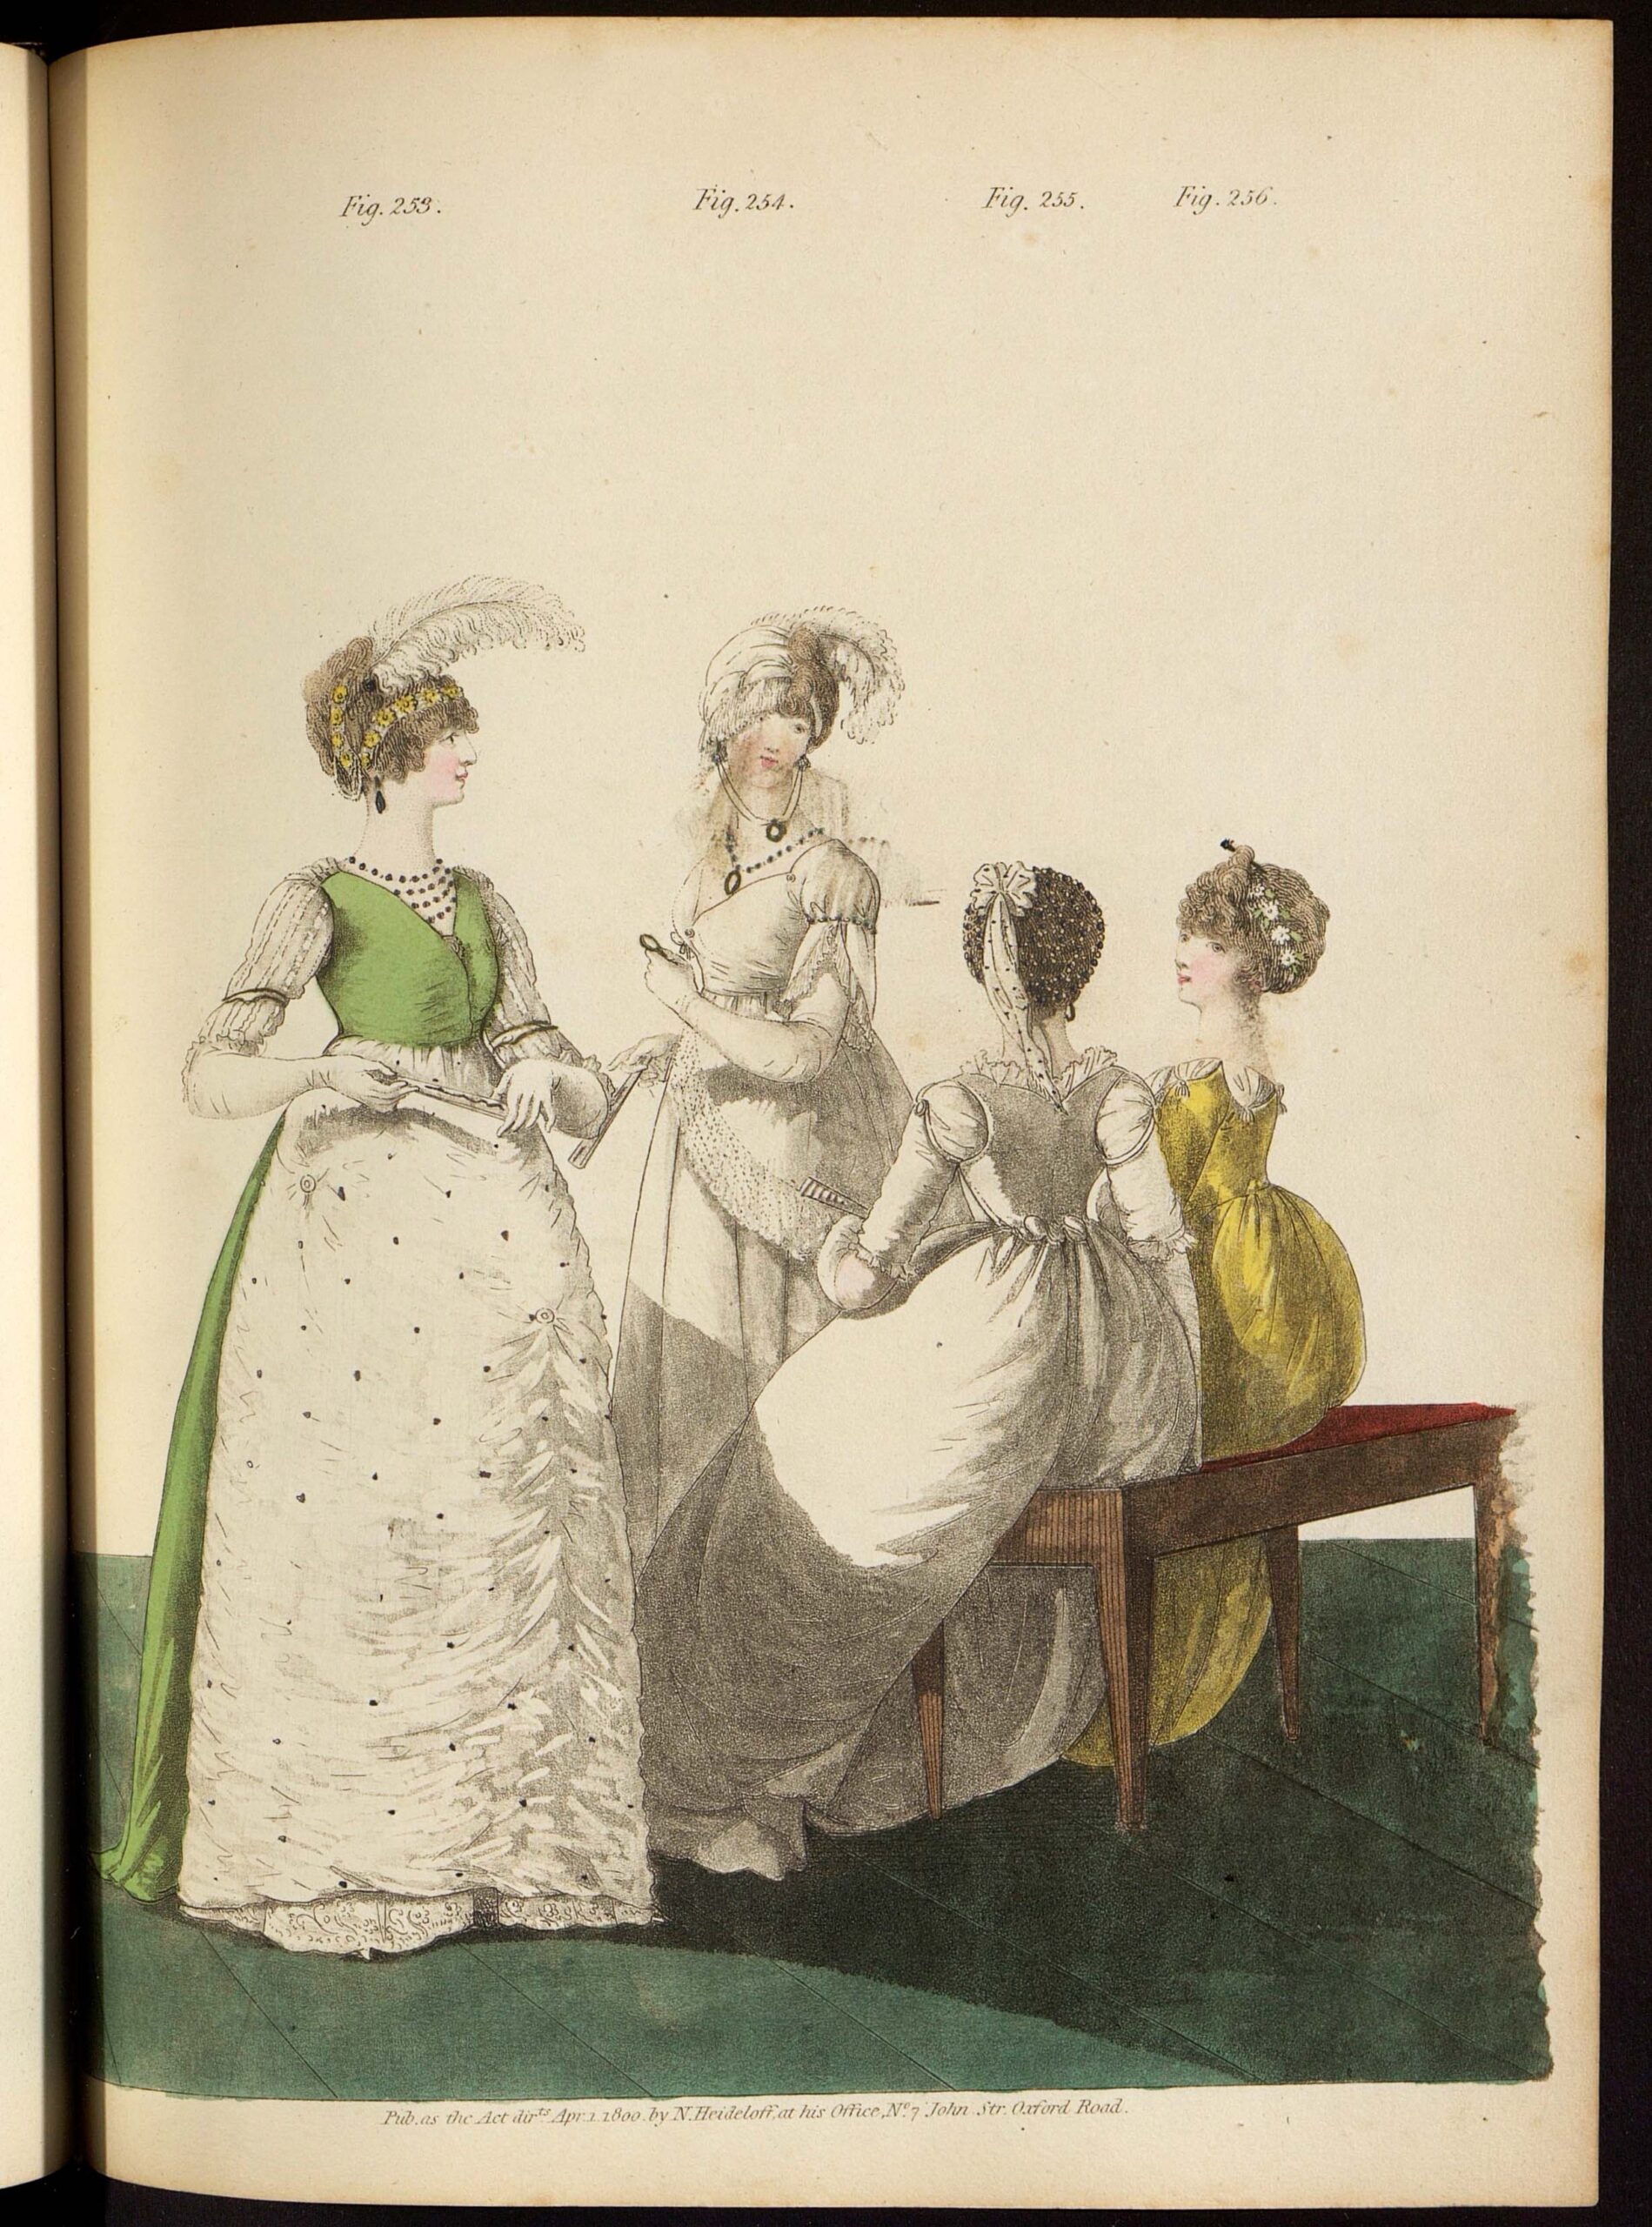 Бальные и вечерние платья. Лист из журнала «Gallery of fashion»Великобритания, 1800 г.